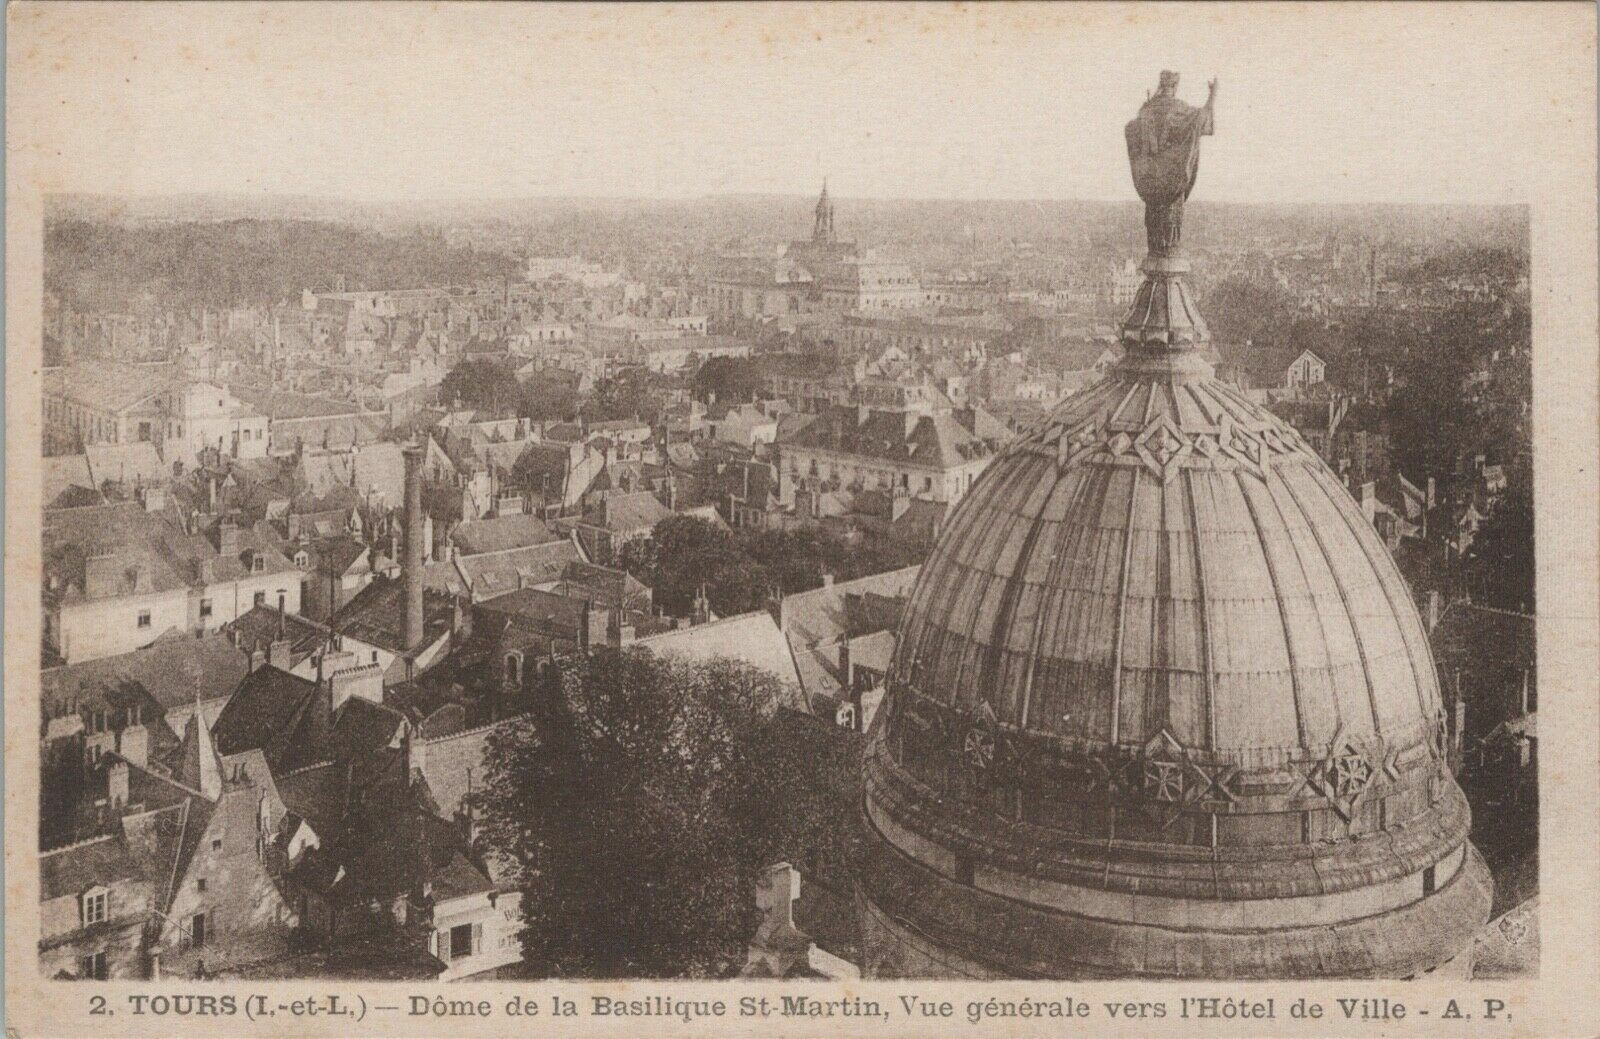 Early 20th Century Antique Postcard-Dome de la Basilique St-Martin, Tours France